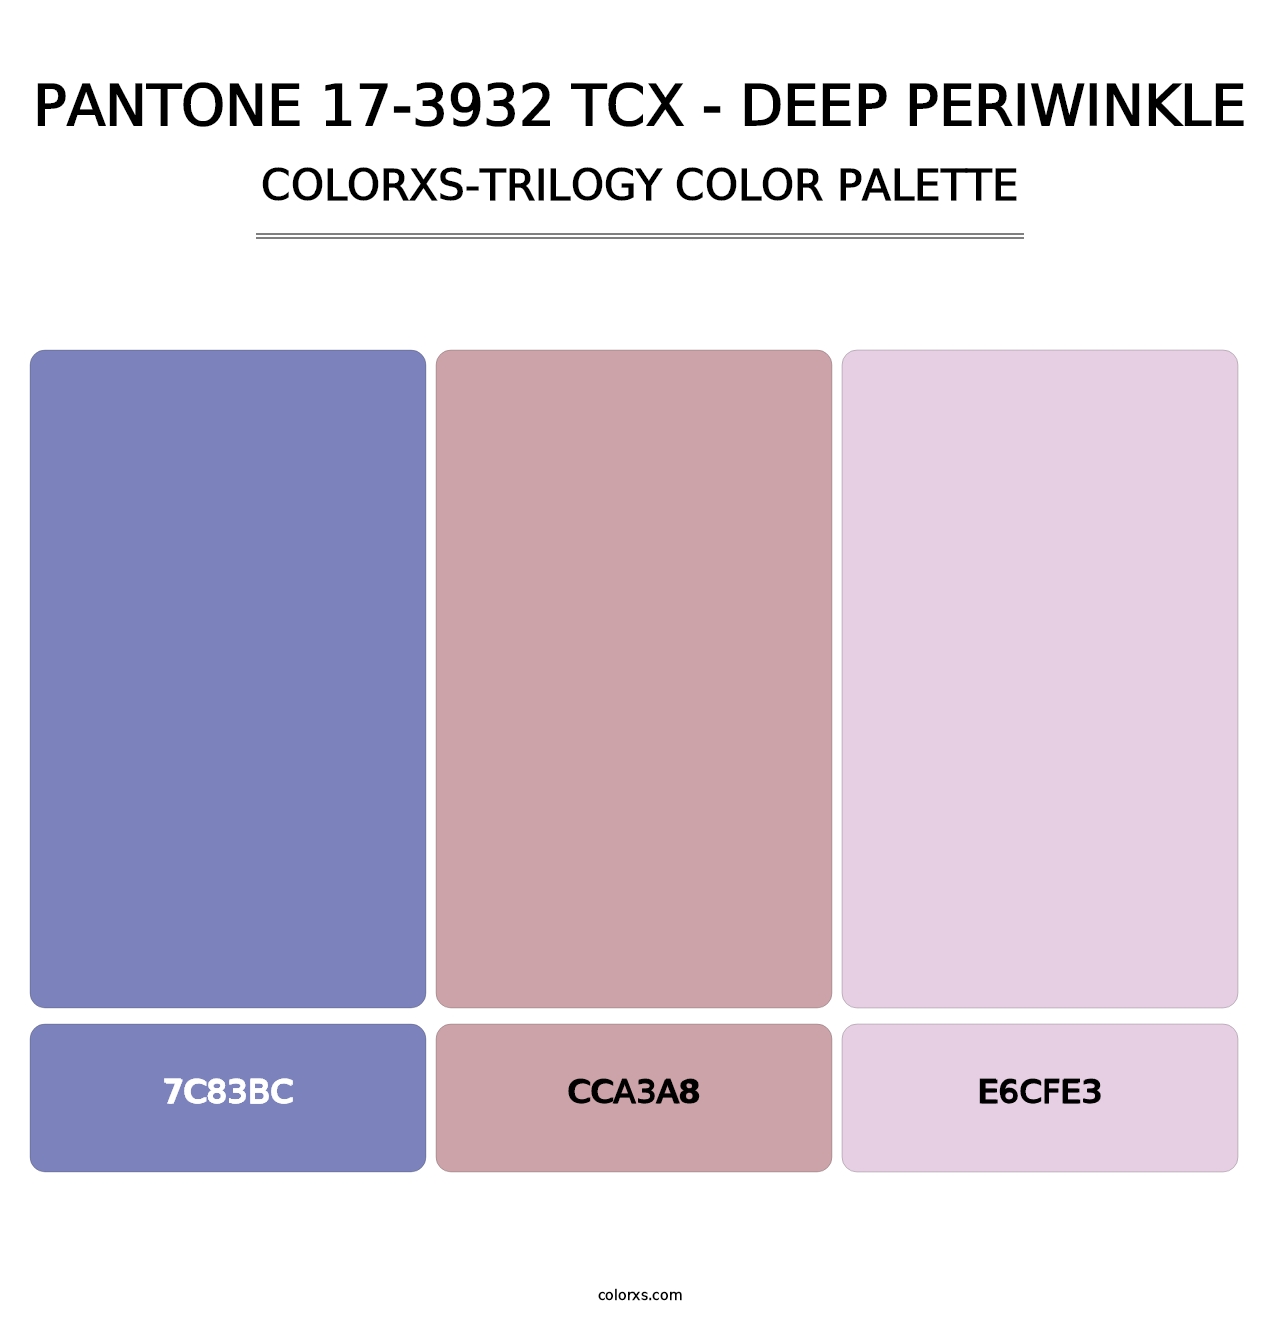 PANTONE 17-3932 TCX - Deep Periwinkle - Colorxs Trilogy Palette